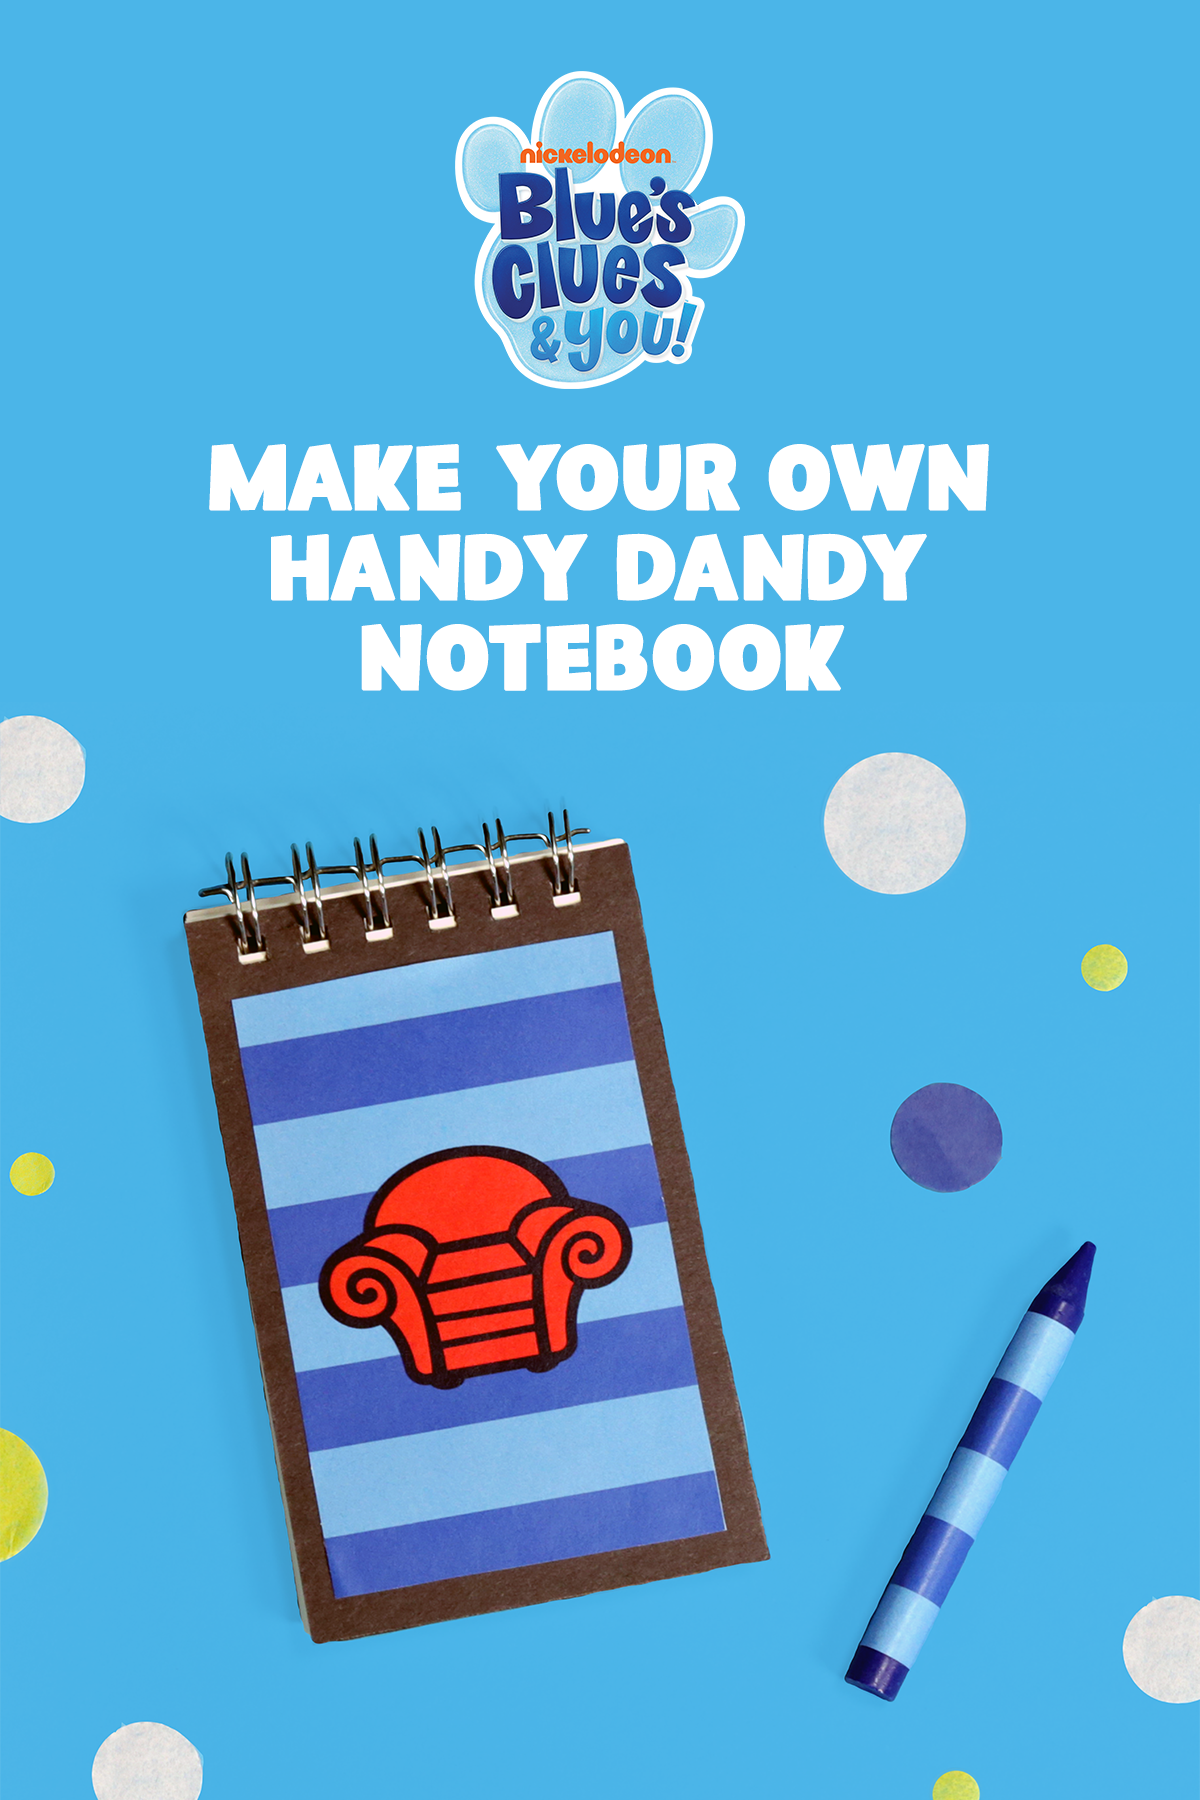 Blue's Clues DIY Handy Dandy Notebook Craft